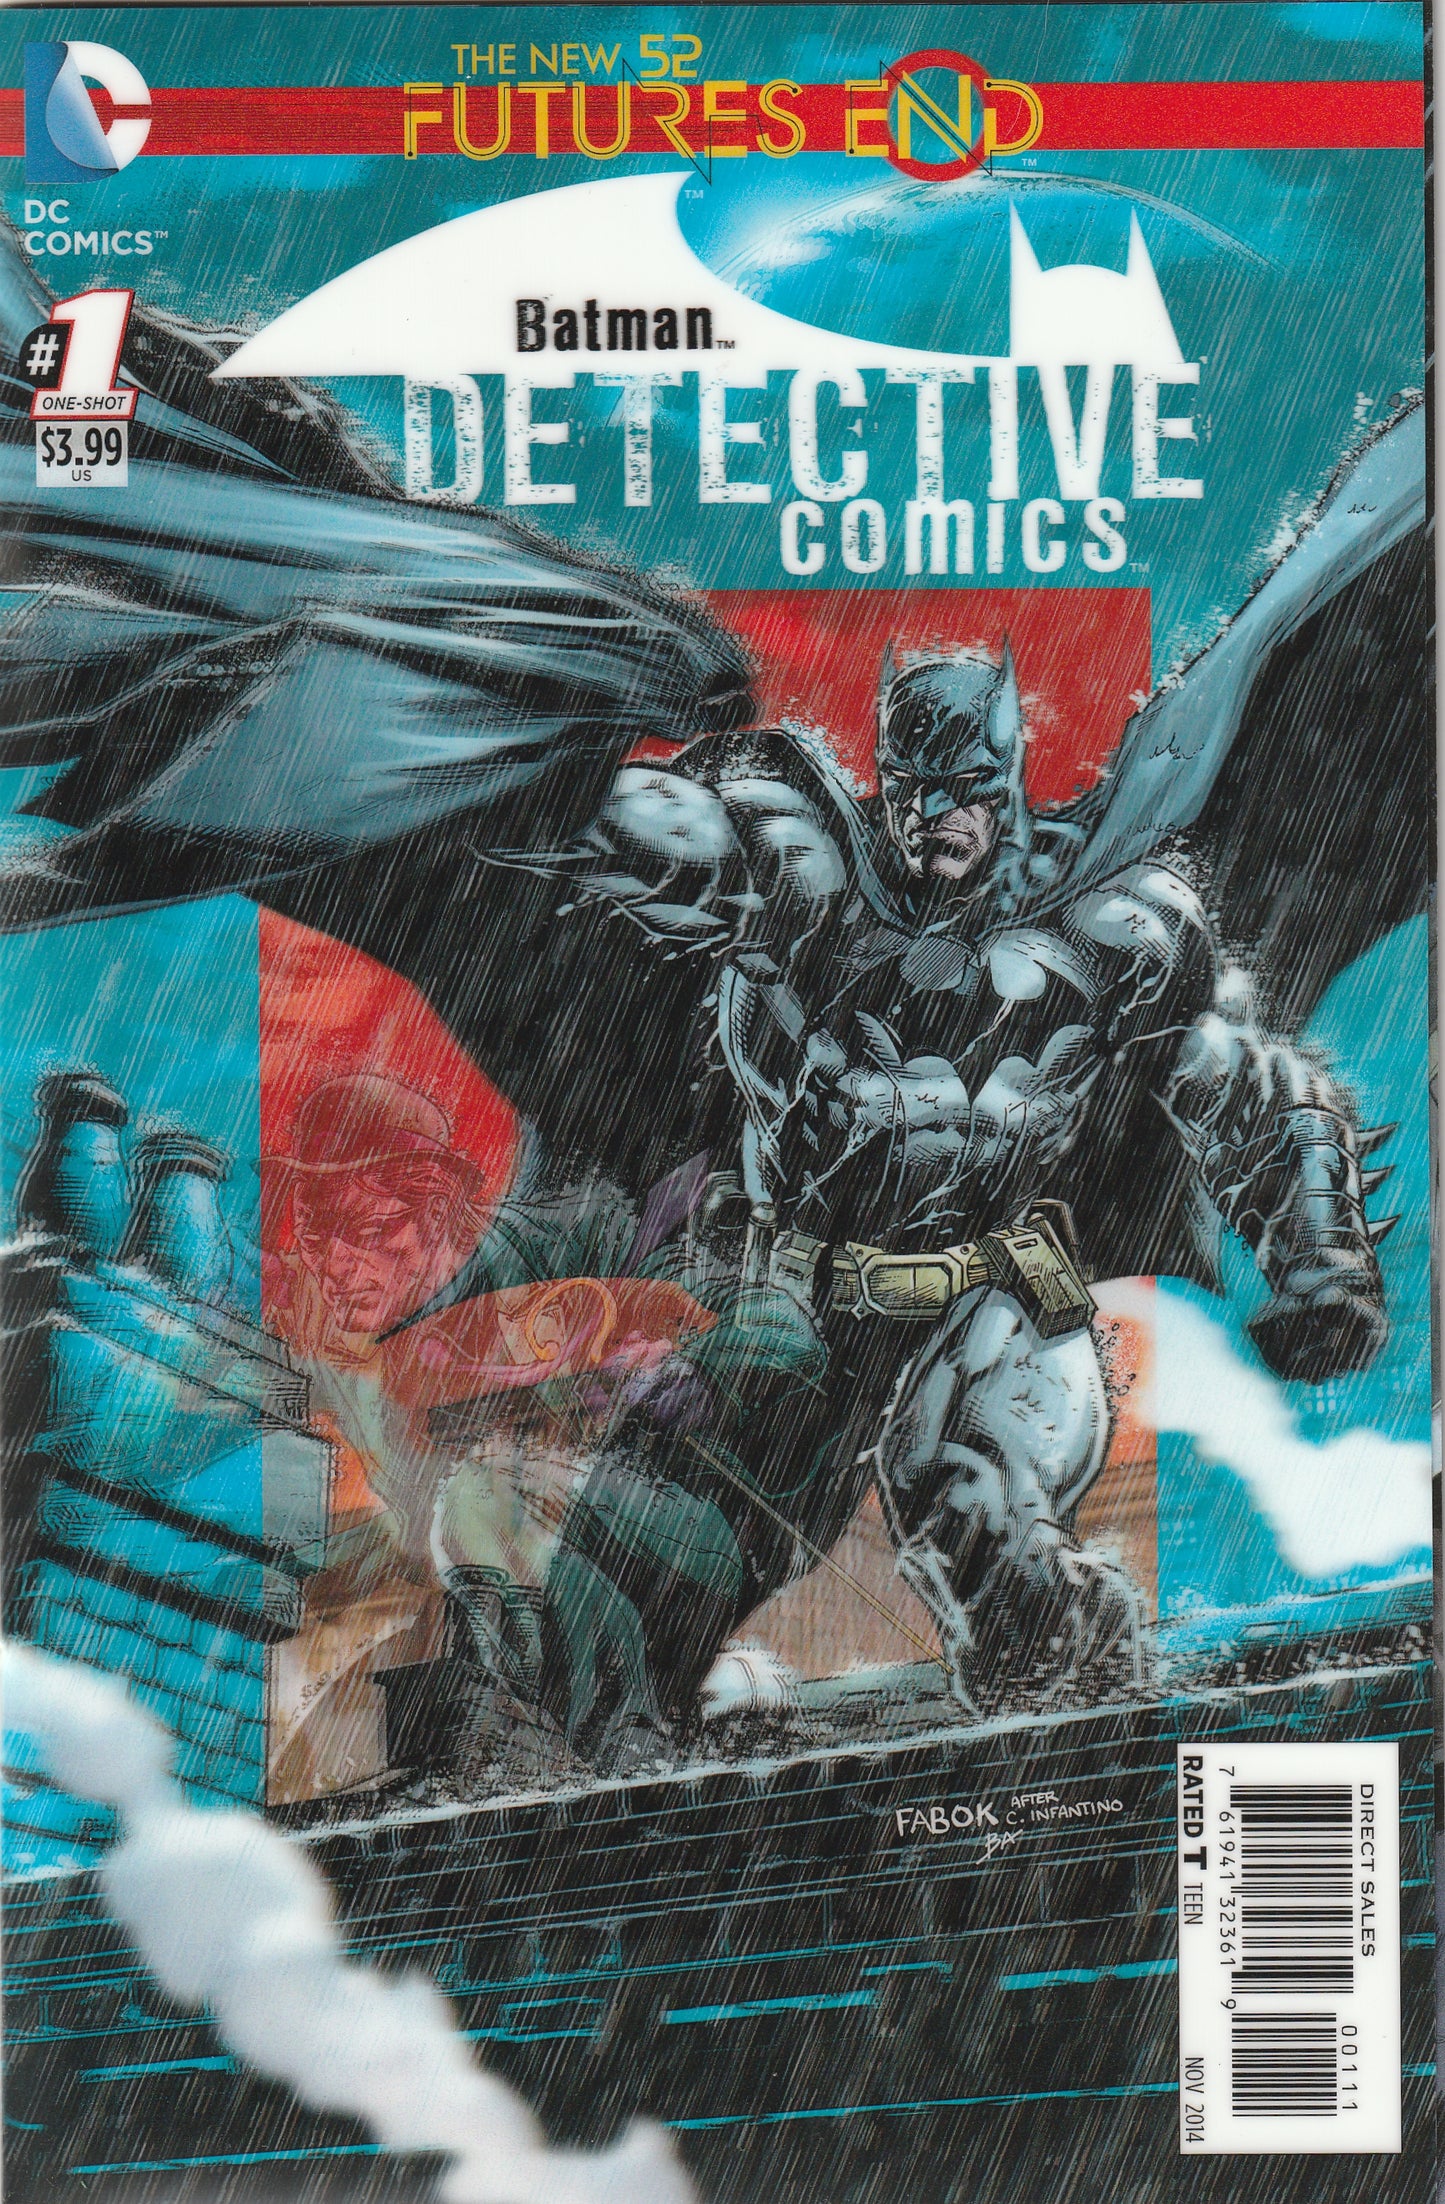 Detective Comics: Futures End #1 (2014) - 3-D Motion Cover